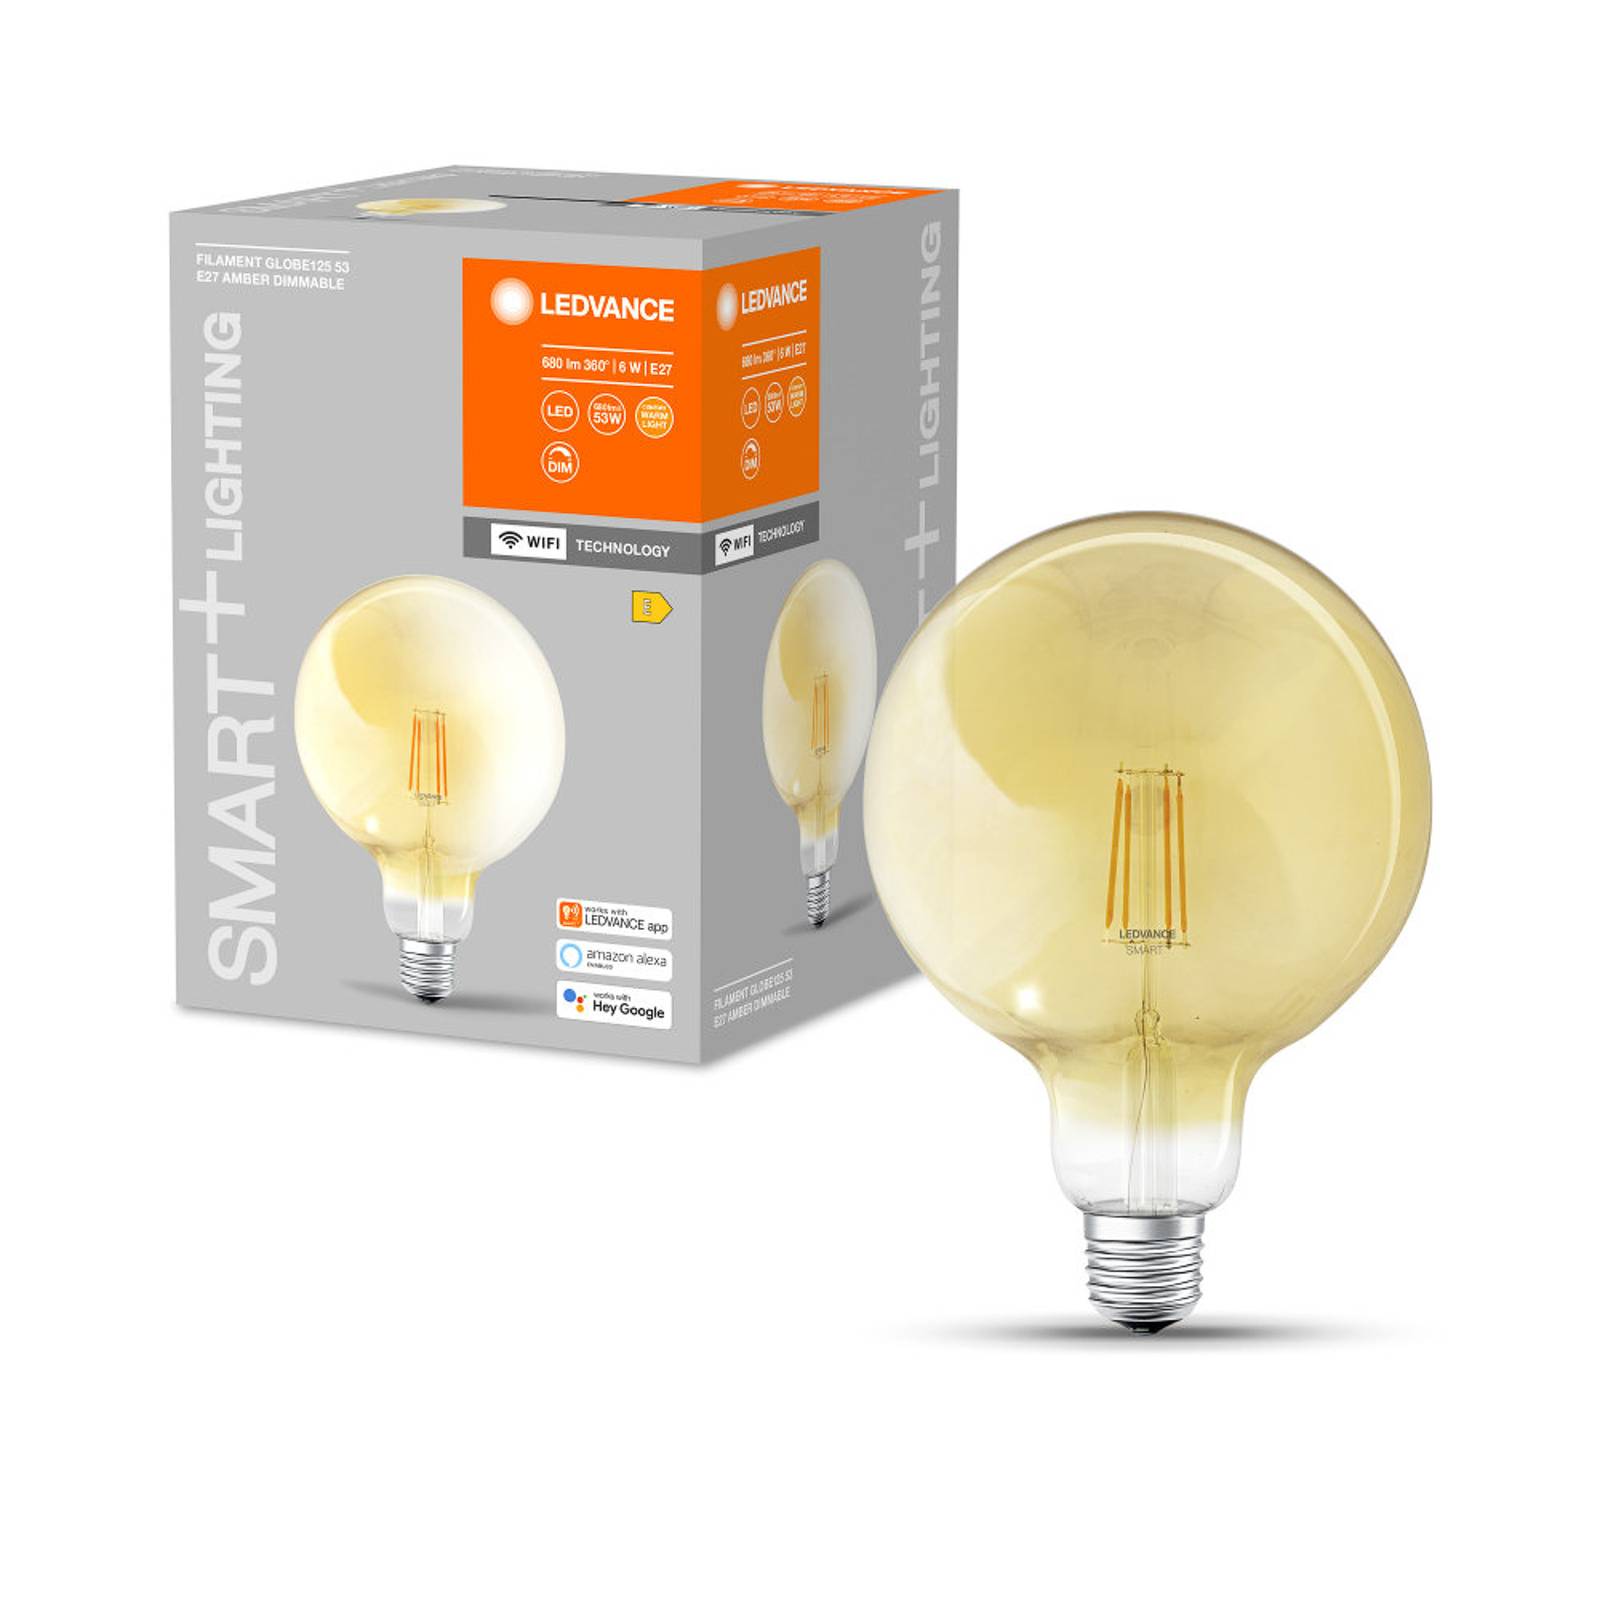 Zdjęcia - Żarówka LEDVANCE SMART+  SMART+ WiFi filament globe E27 6W 2 400 K 